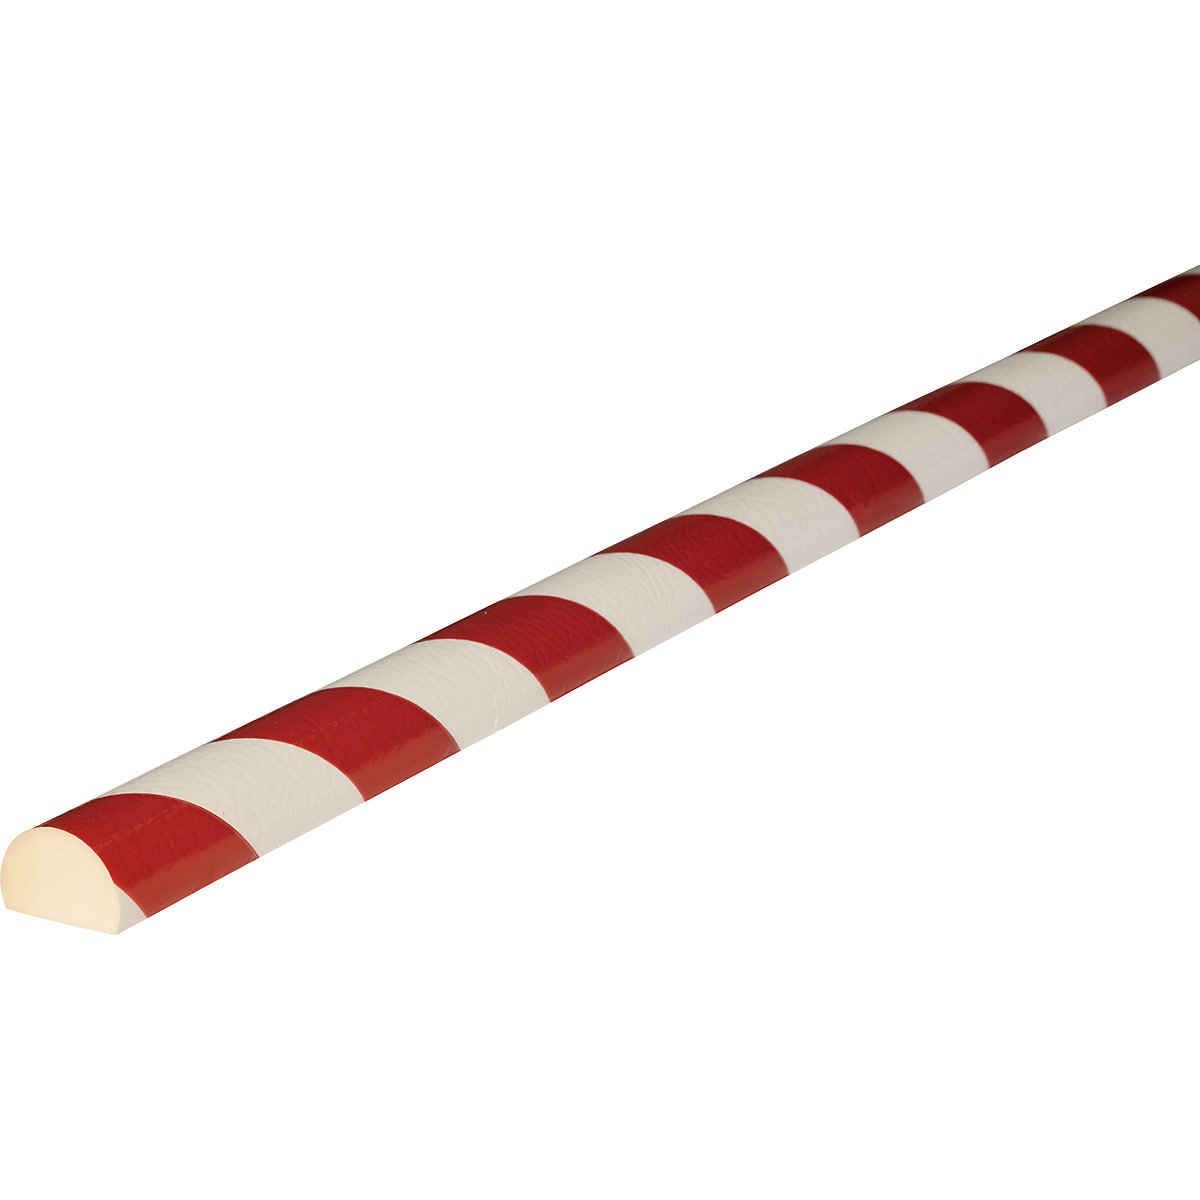 Protezione delle superfici Knuffi® – SHG, tipo C, taglio su misura, al metro lineare, rosso / bianco-20